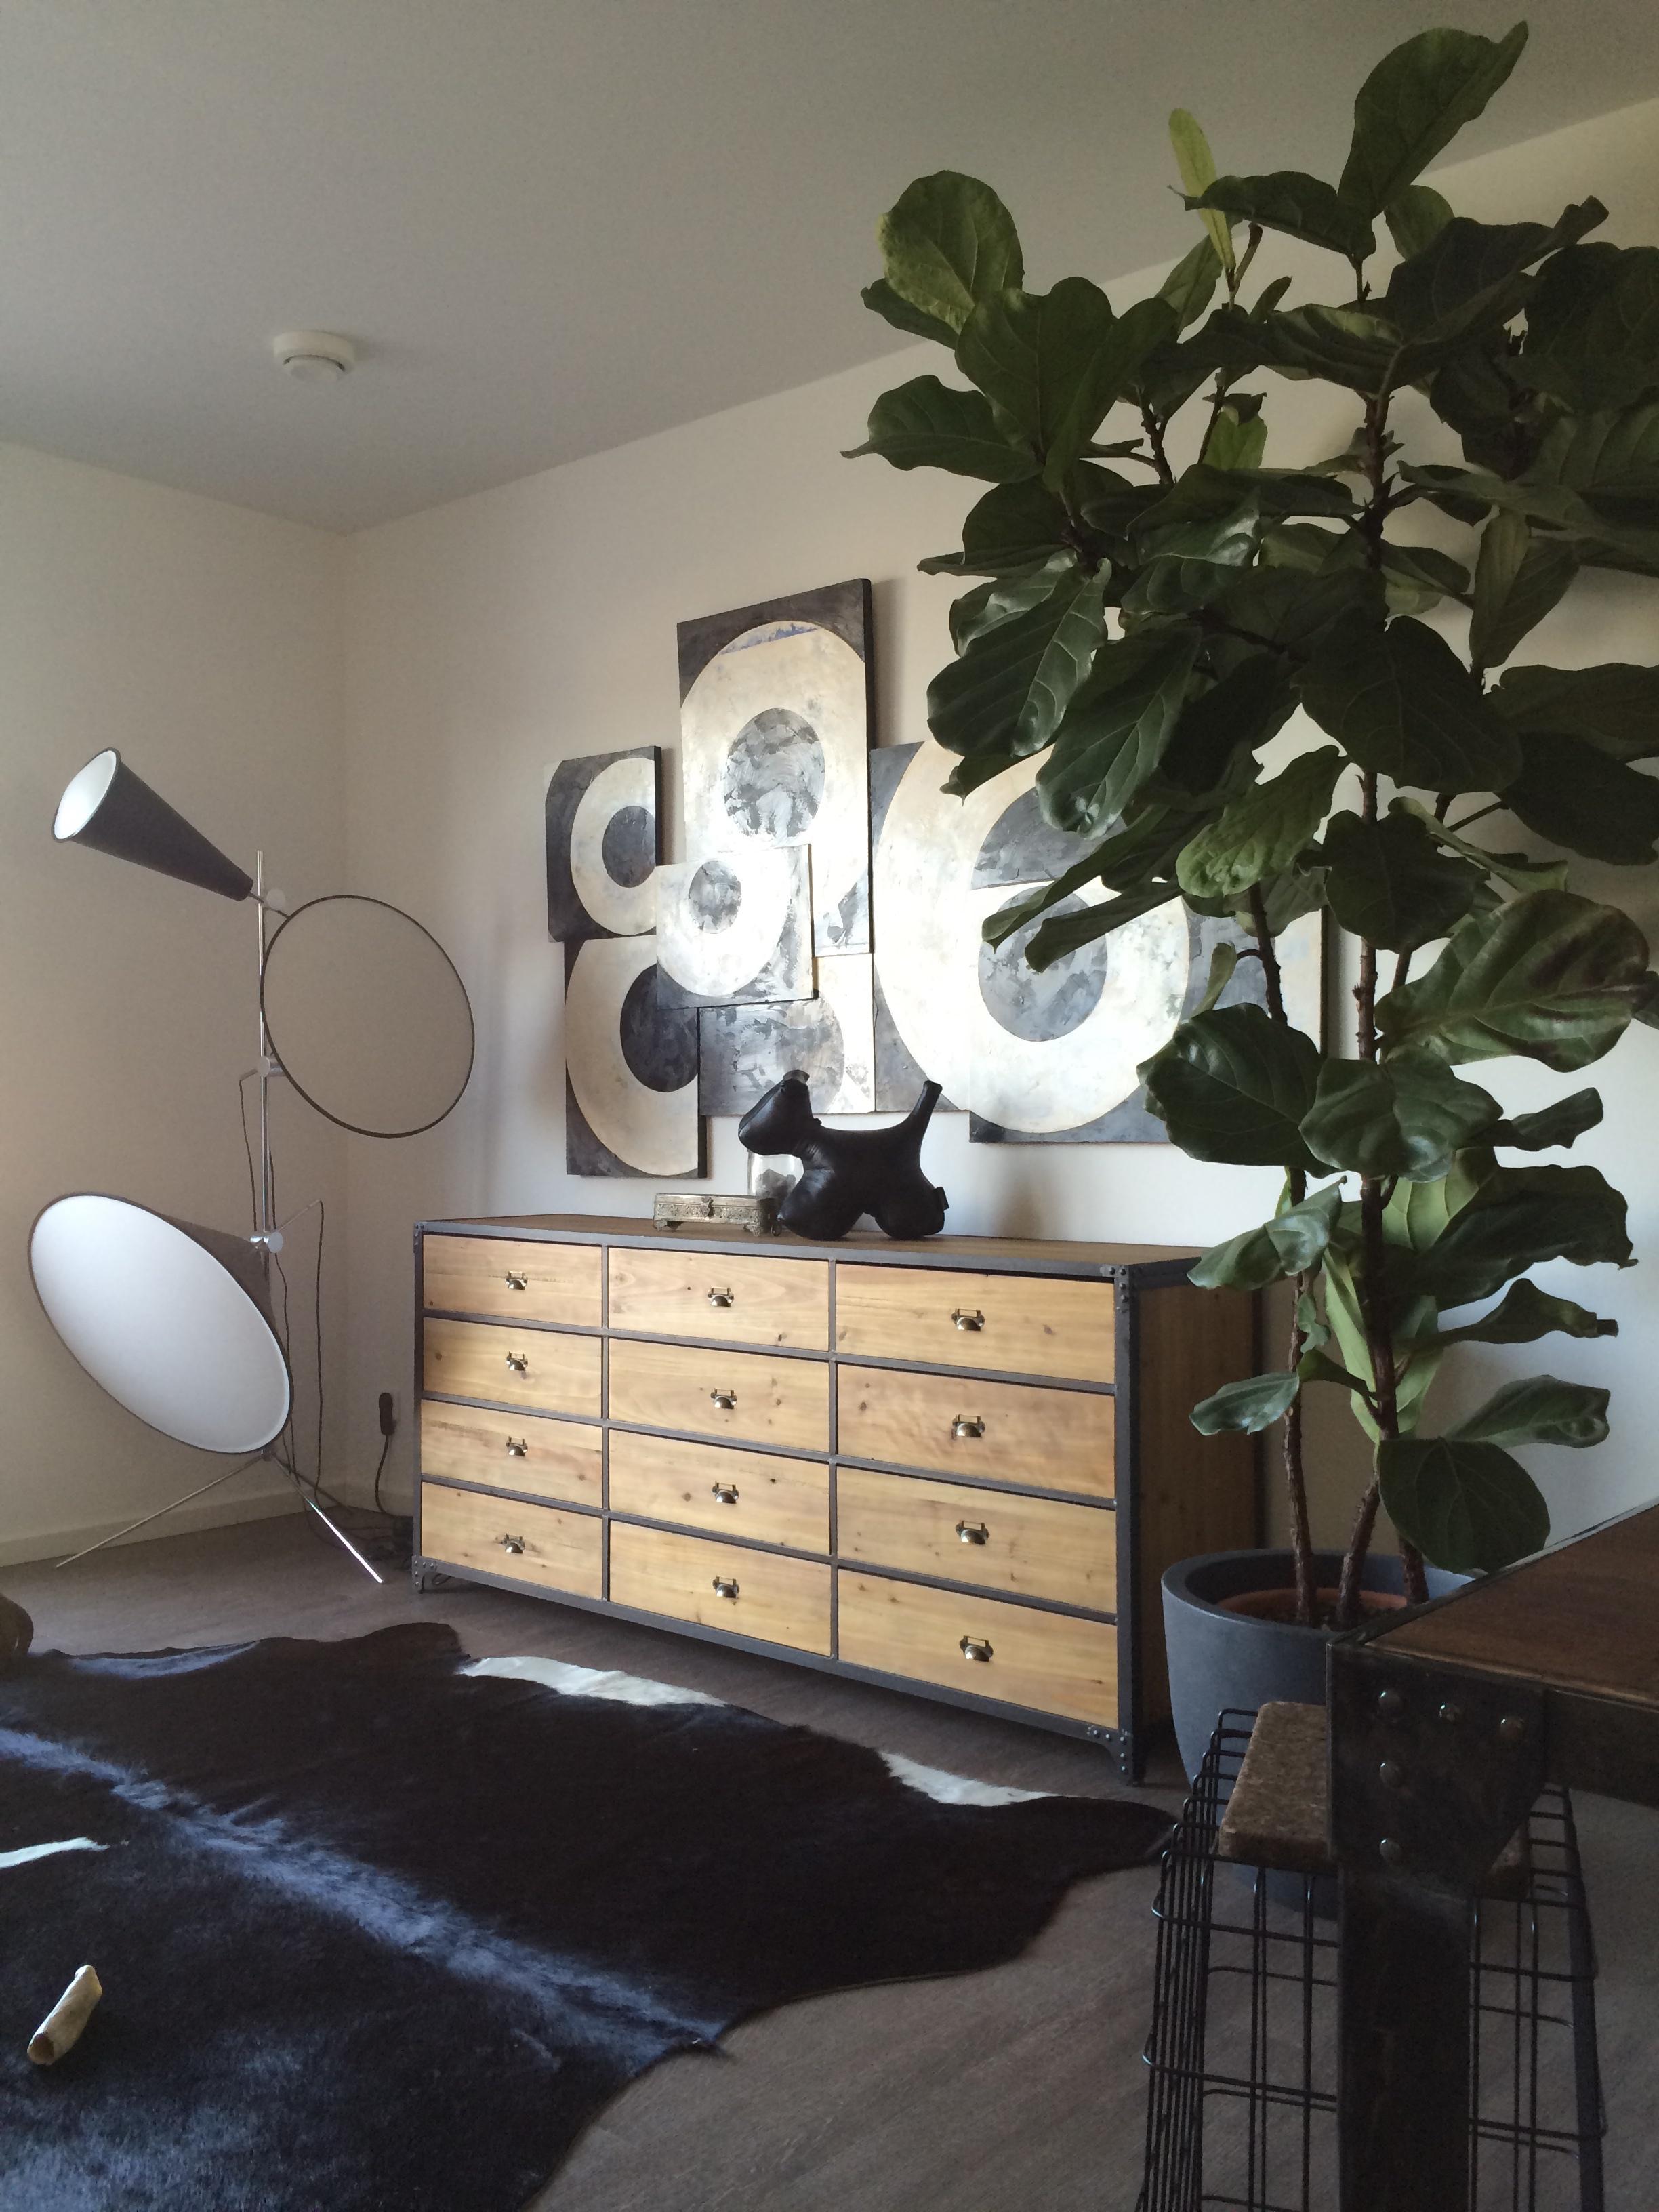 Wohnzimmer #wandgestaltung #kommode #kuhfell ©Hot Dog Decor